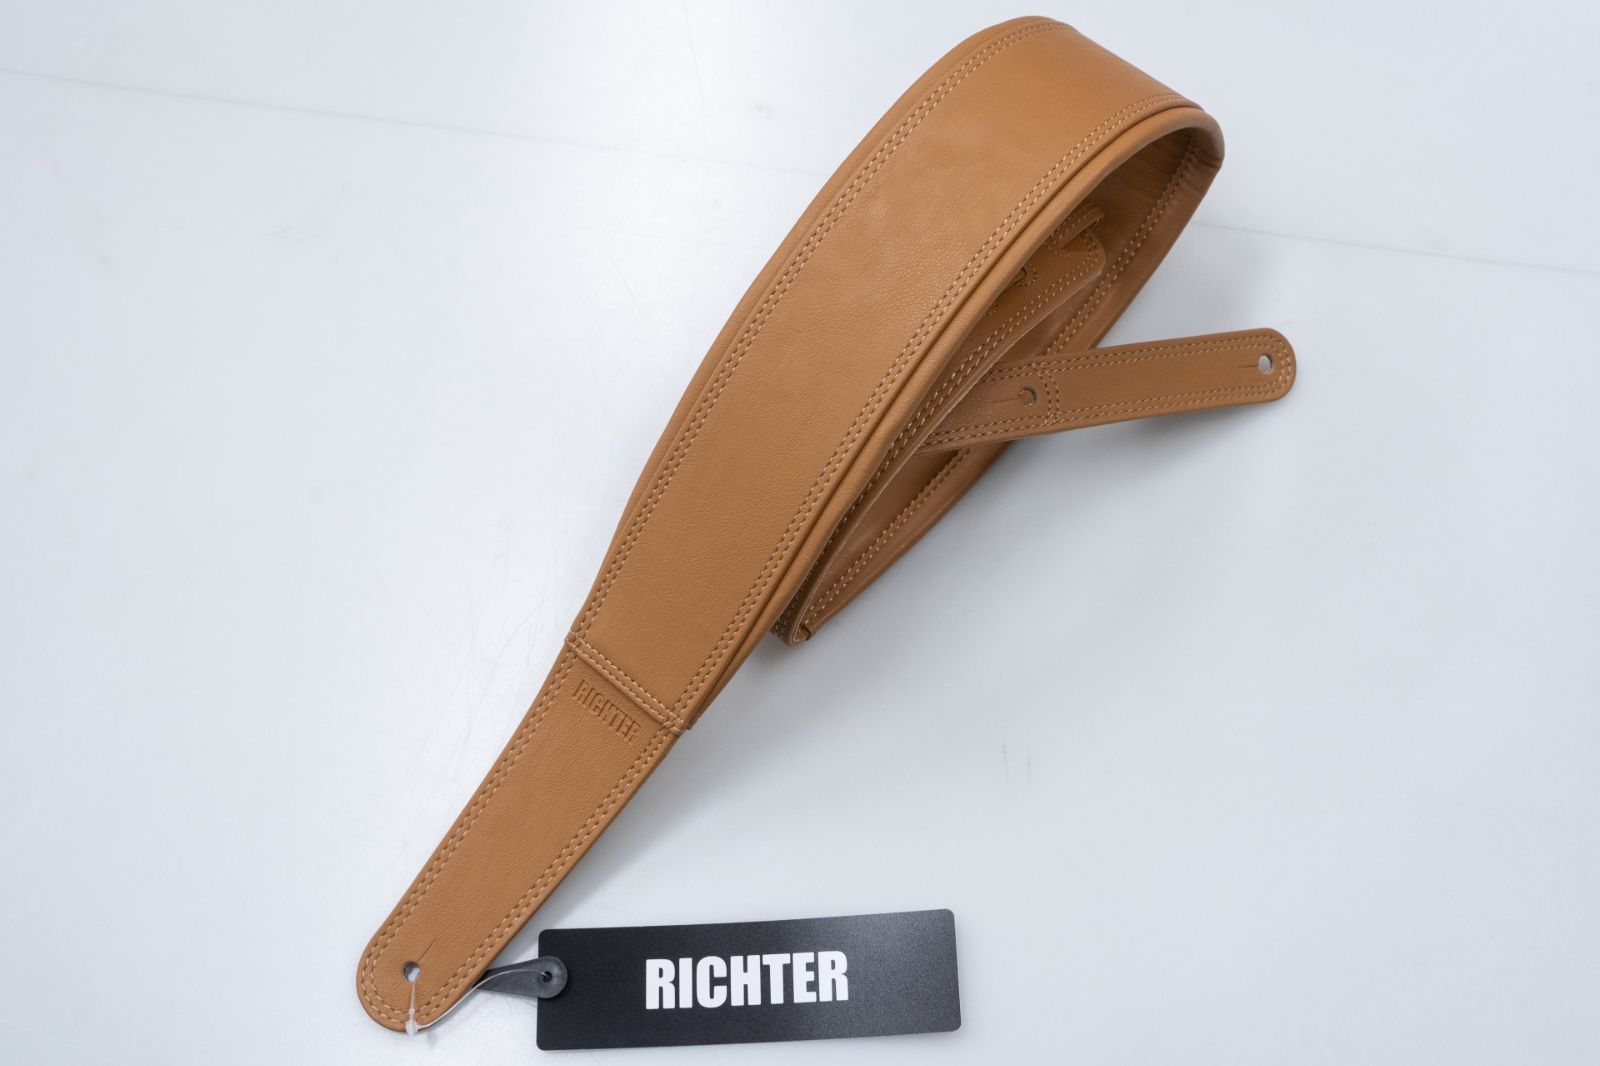 new】Richter / Springbreak I Leatherette (Vegan) Light Brown 【GIB横浜】 - メルカリ